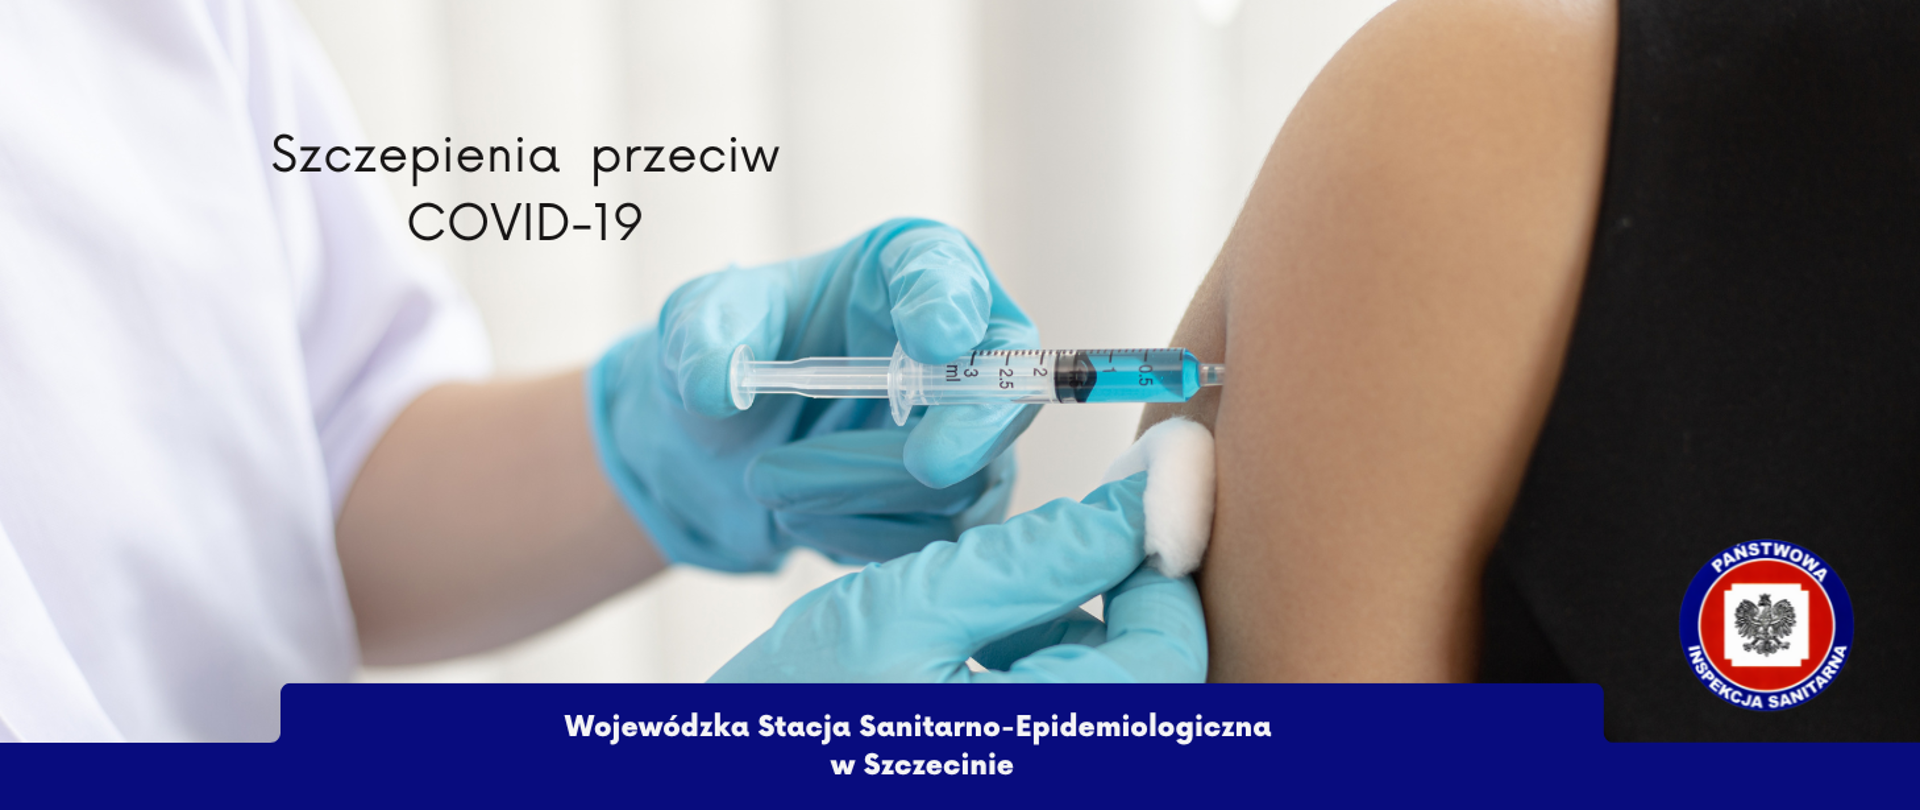 Na zdjęciu znajdują się osoby wykonujące zastrzyk i napis "szczepienia przeciw COVID-19".